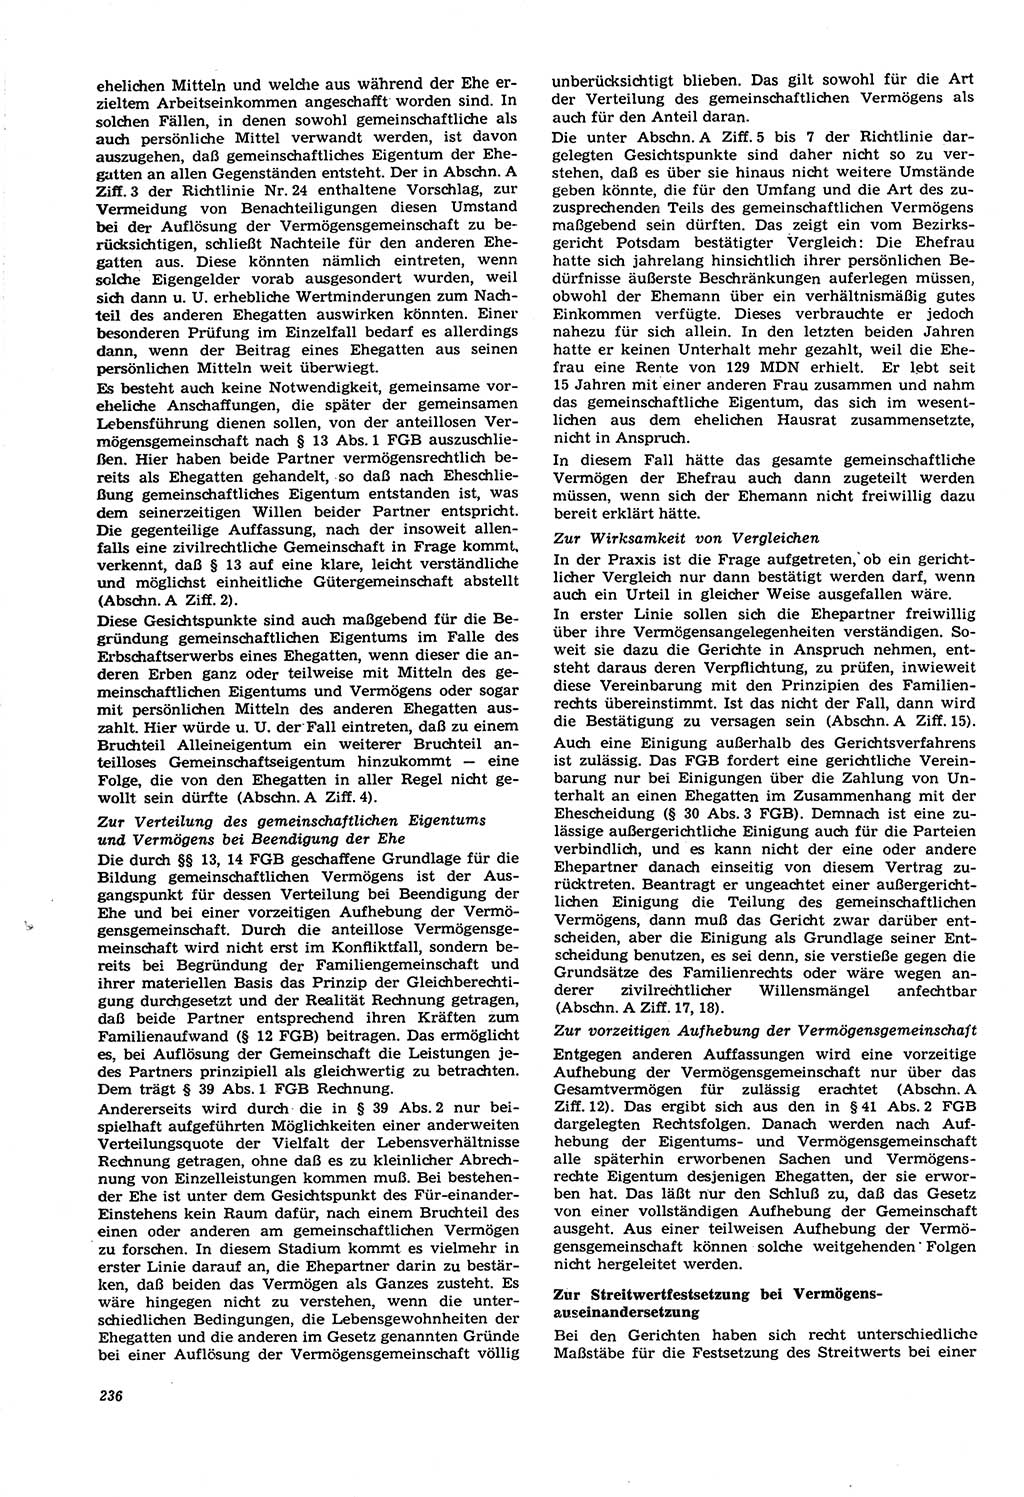 Neue Justiz (NJ), Zeitschrift für Recht und Rechtswissenschaft [Deutsche Demokratische Republik (DDR)], 21. Jahrgang 1967, Seite 236 (NJ DDR 1967, S. 236)